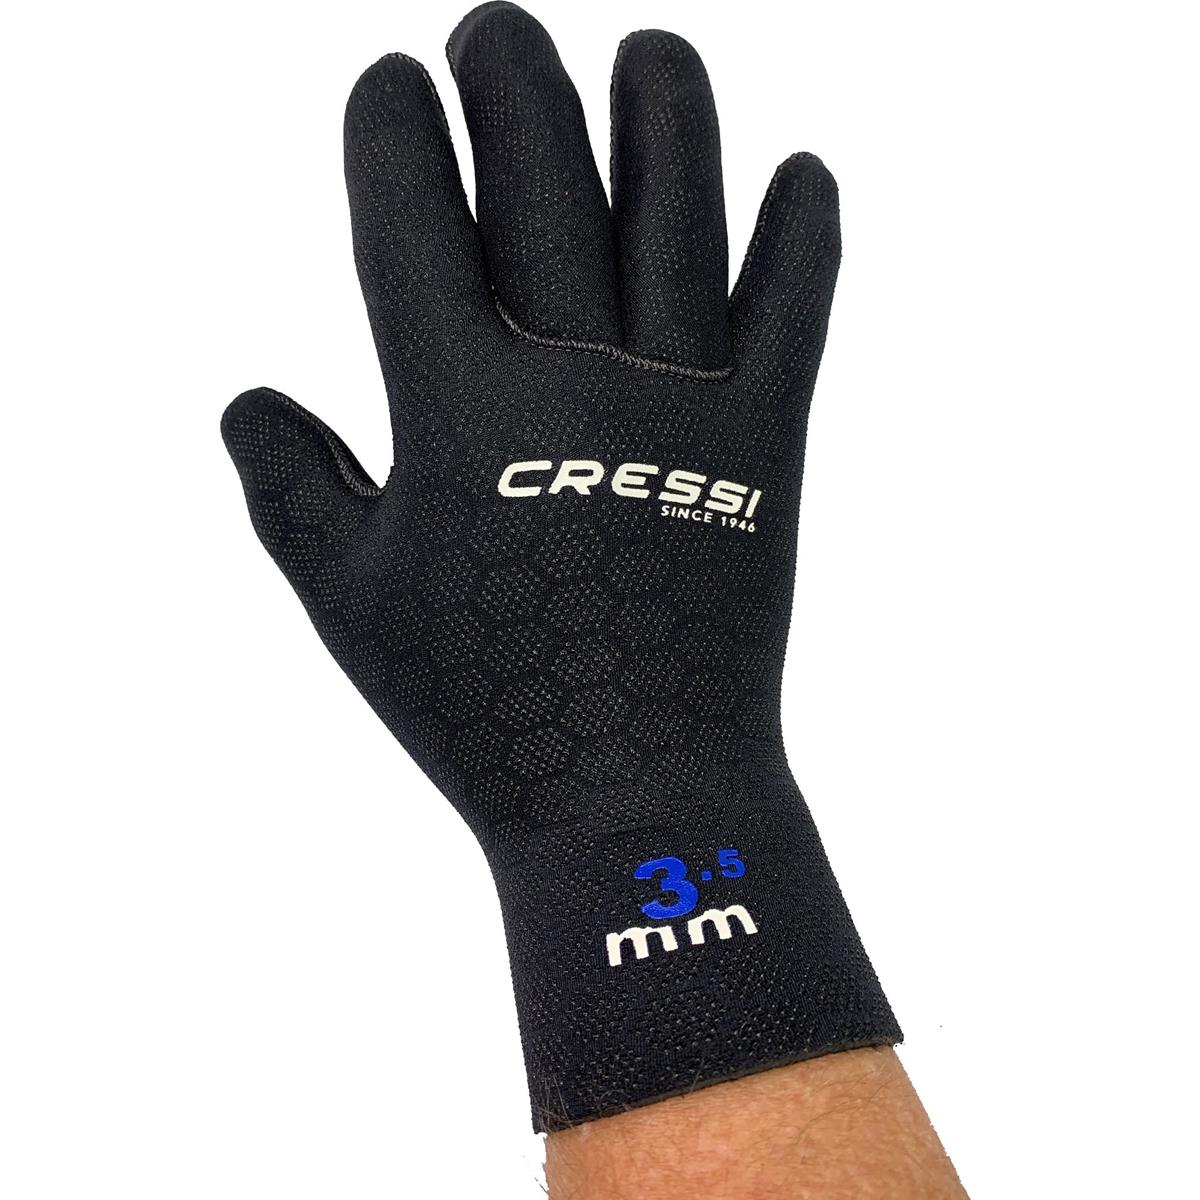 High Stretch Gloves Guanti Neoprene 3.5mm Ultraspam